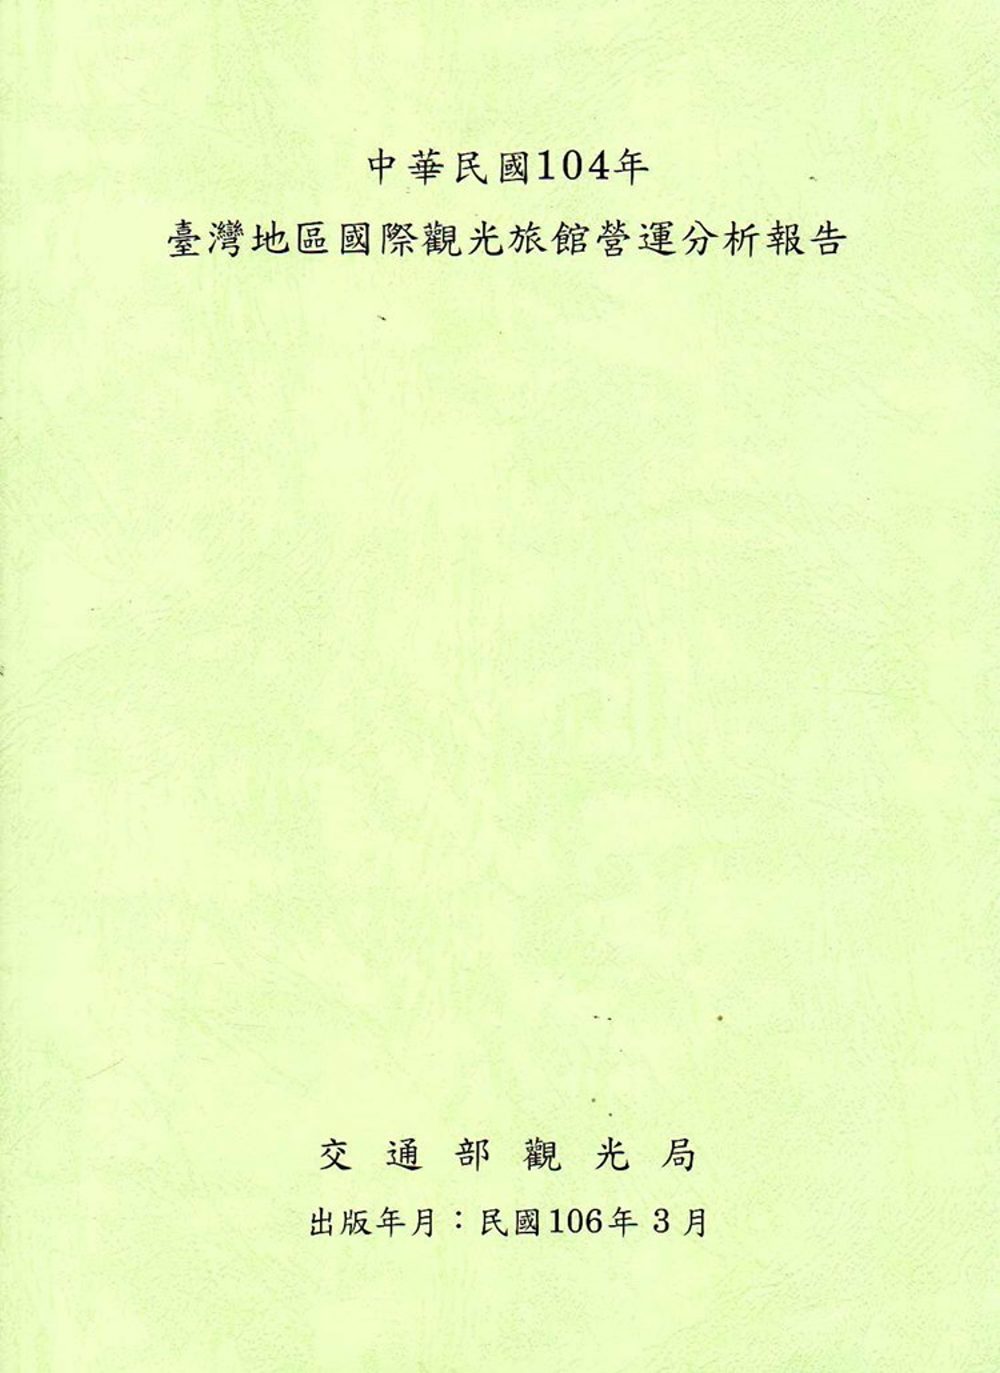 中華民國104年臺灣地區國際觀光旅館營運分析報告